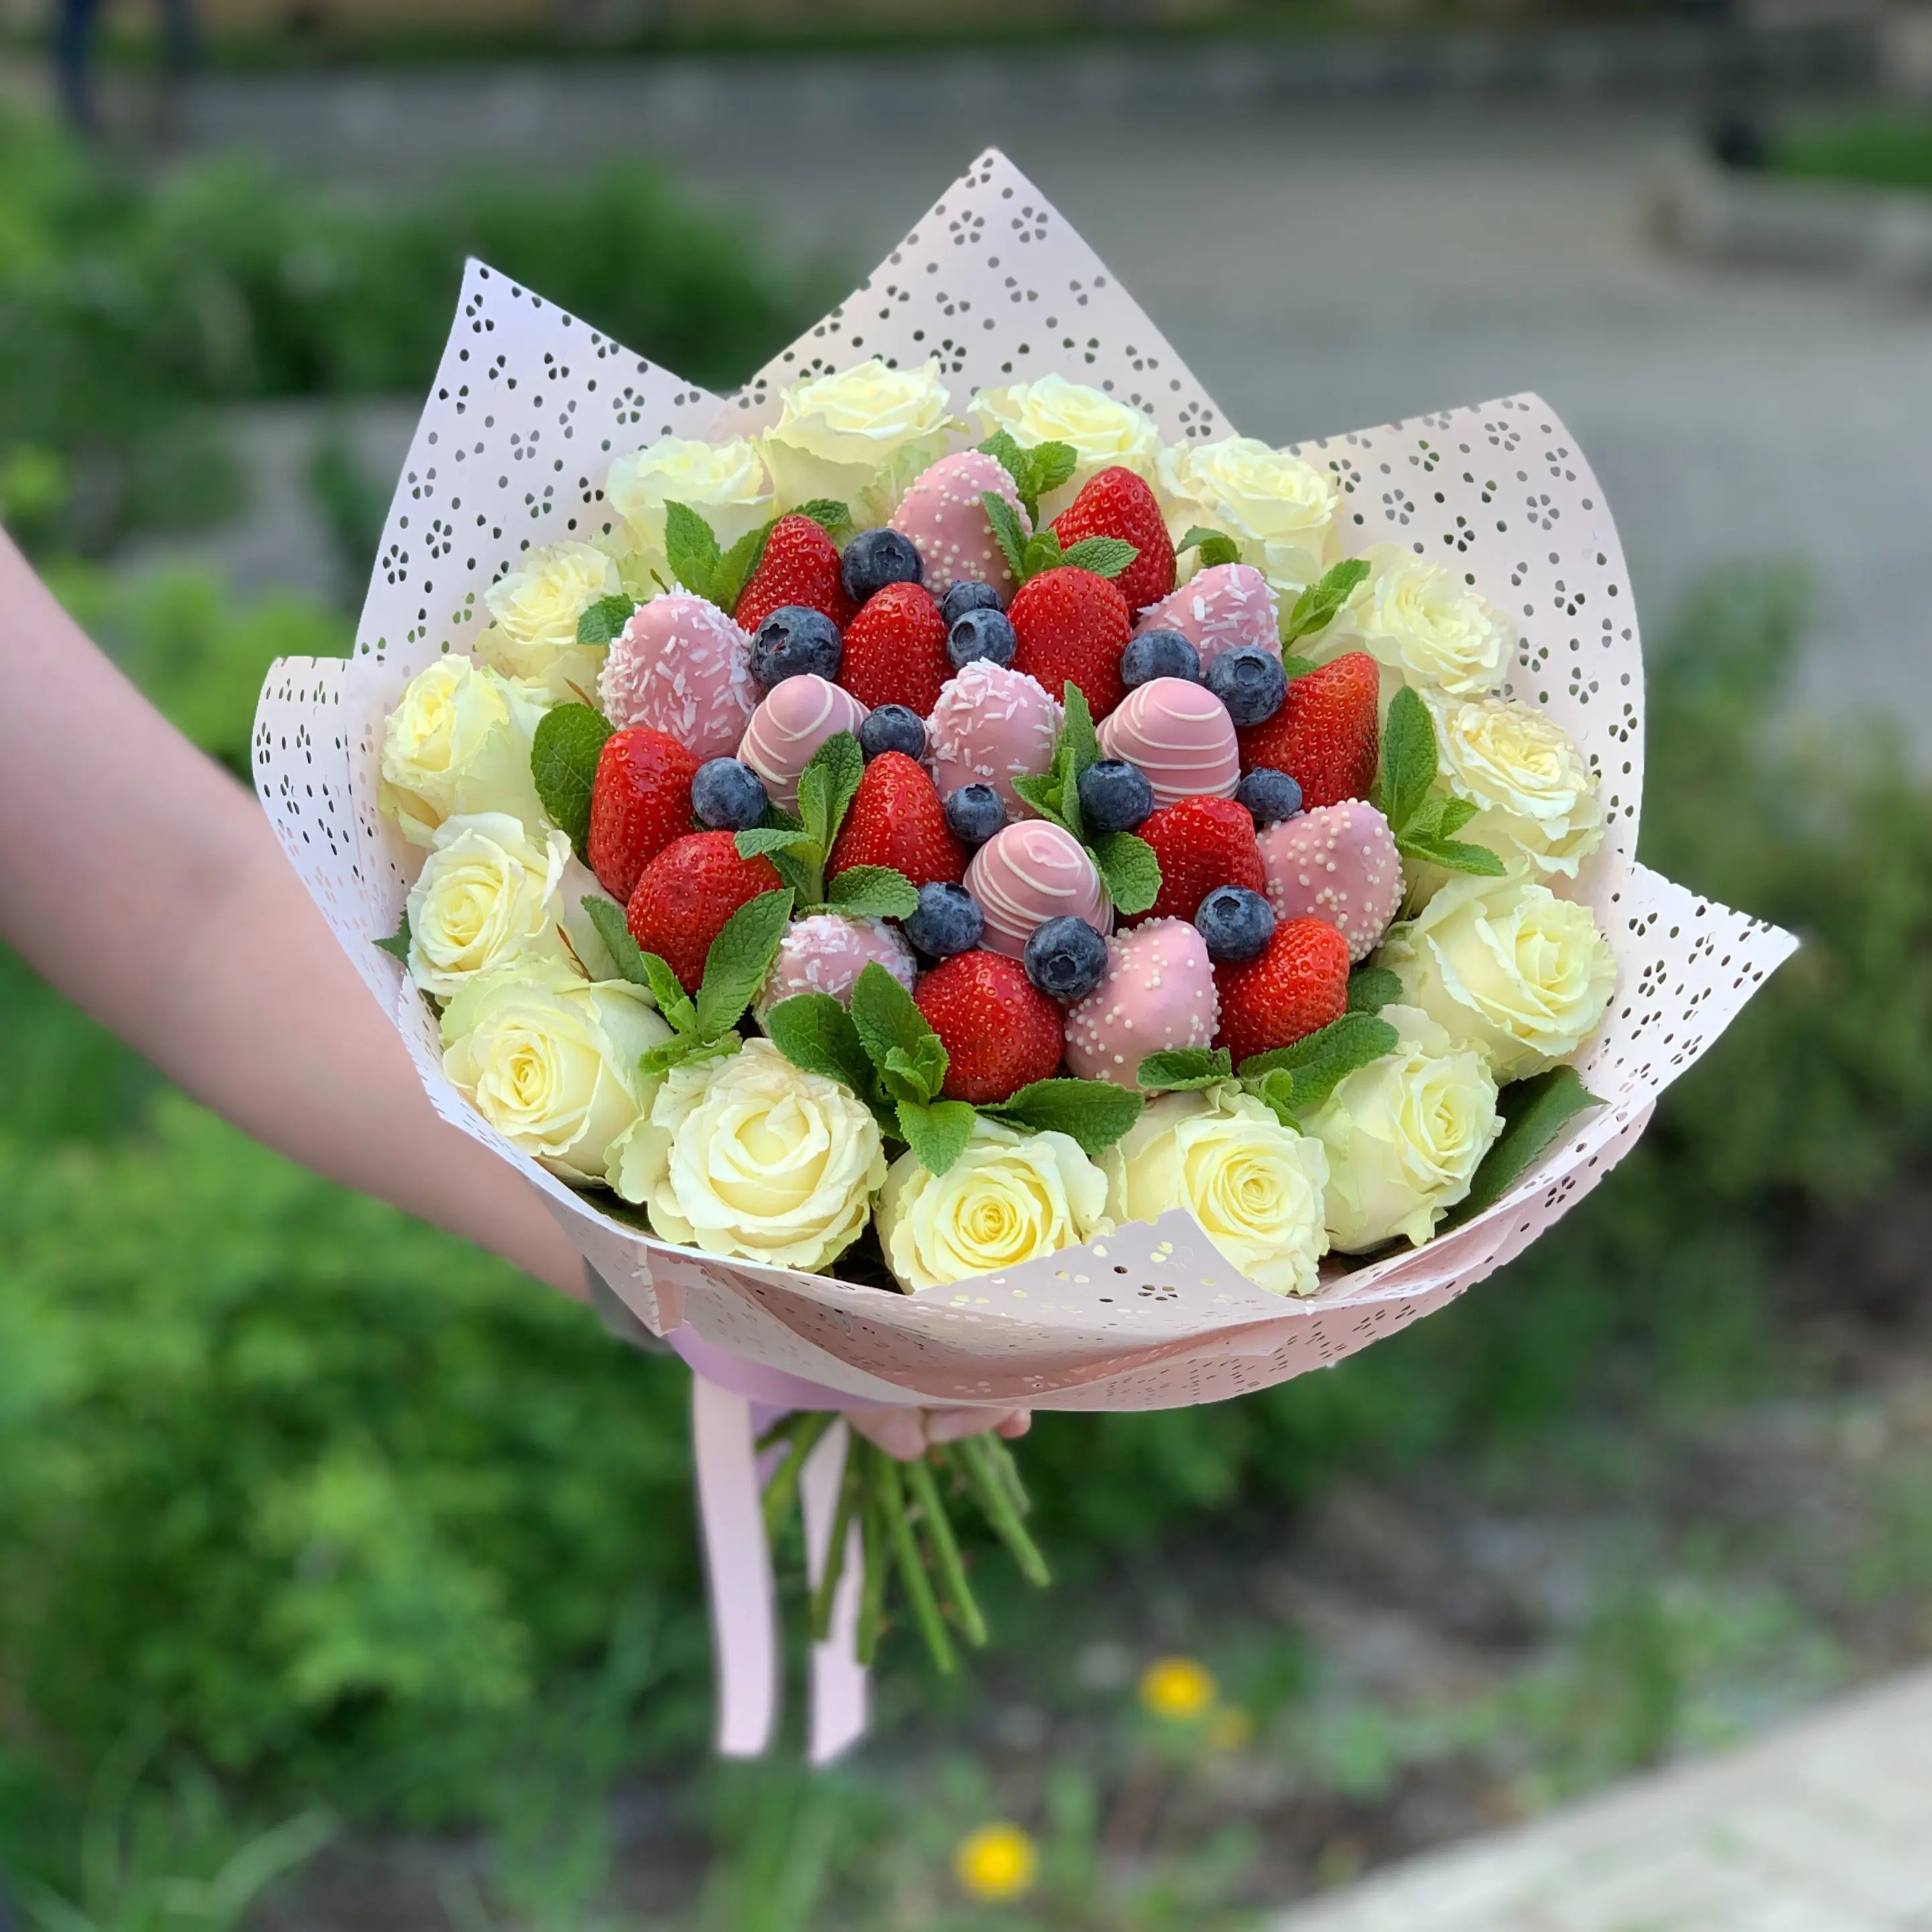 Букет из ягод с розами "Клубничное эскимо"4 800 руб.